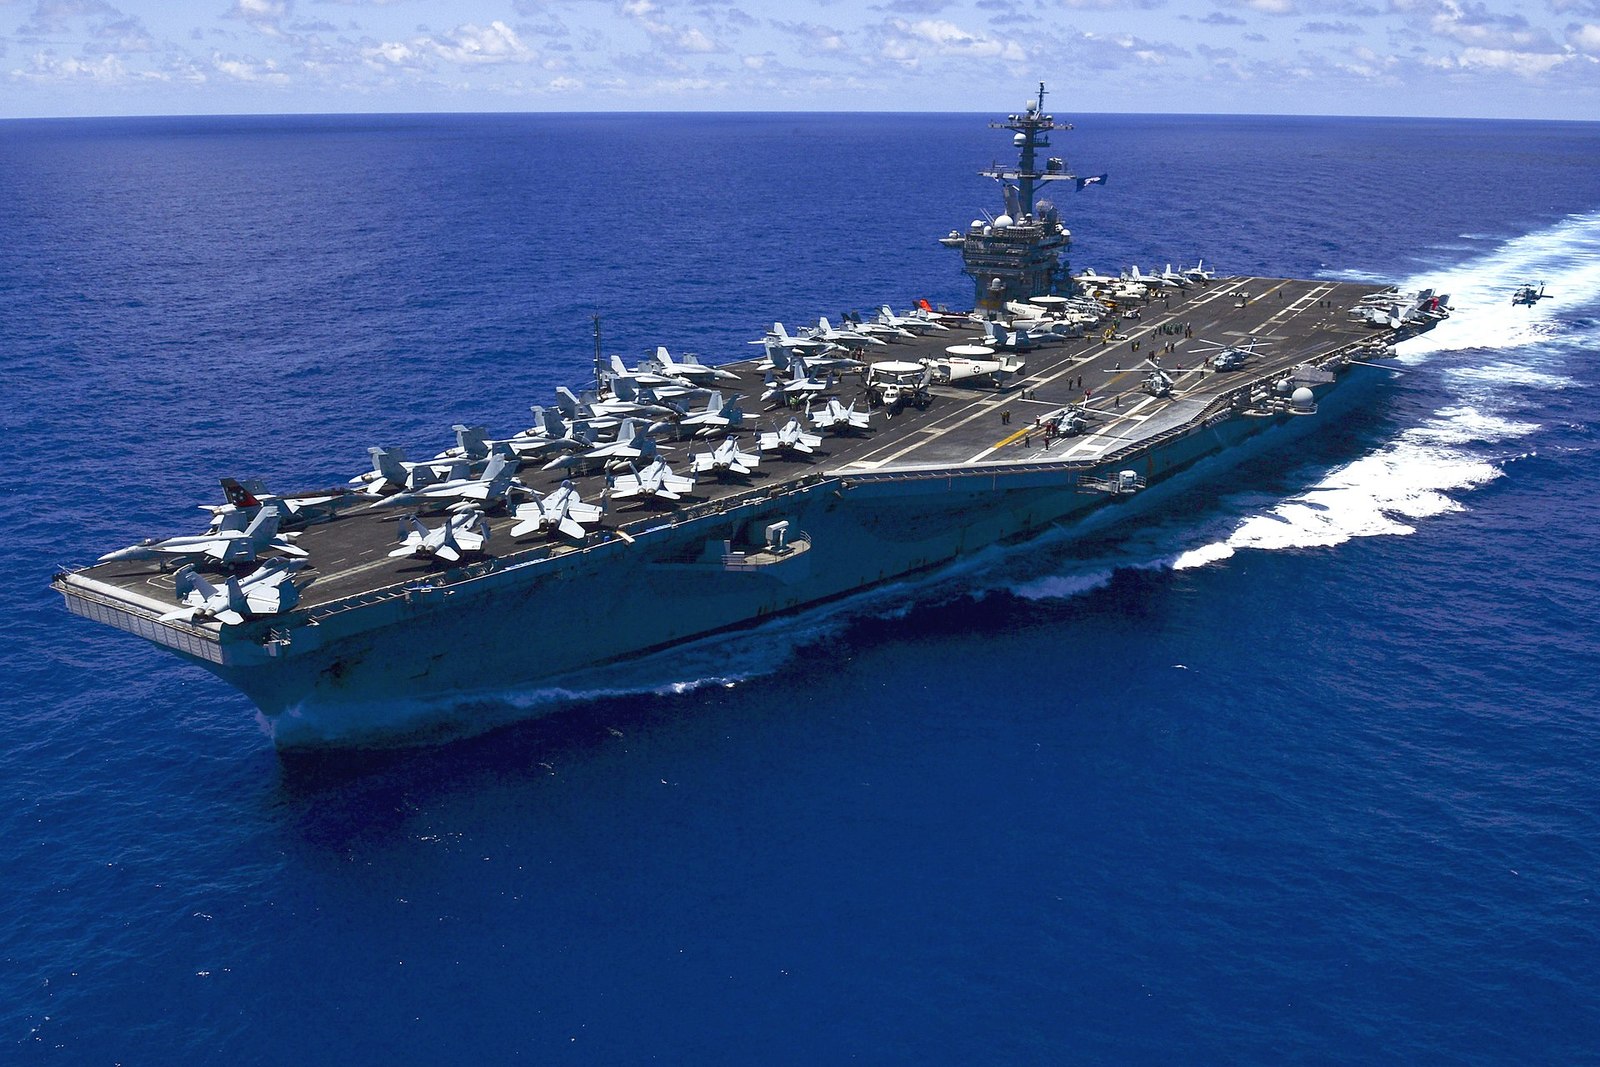 1920px-USS_Carl_Vinson_%28CVN-70%29_underway_in_the_Pacific_Ocean_on_31_May_2015.jpg